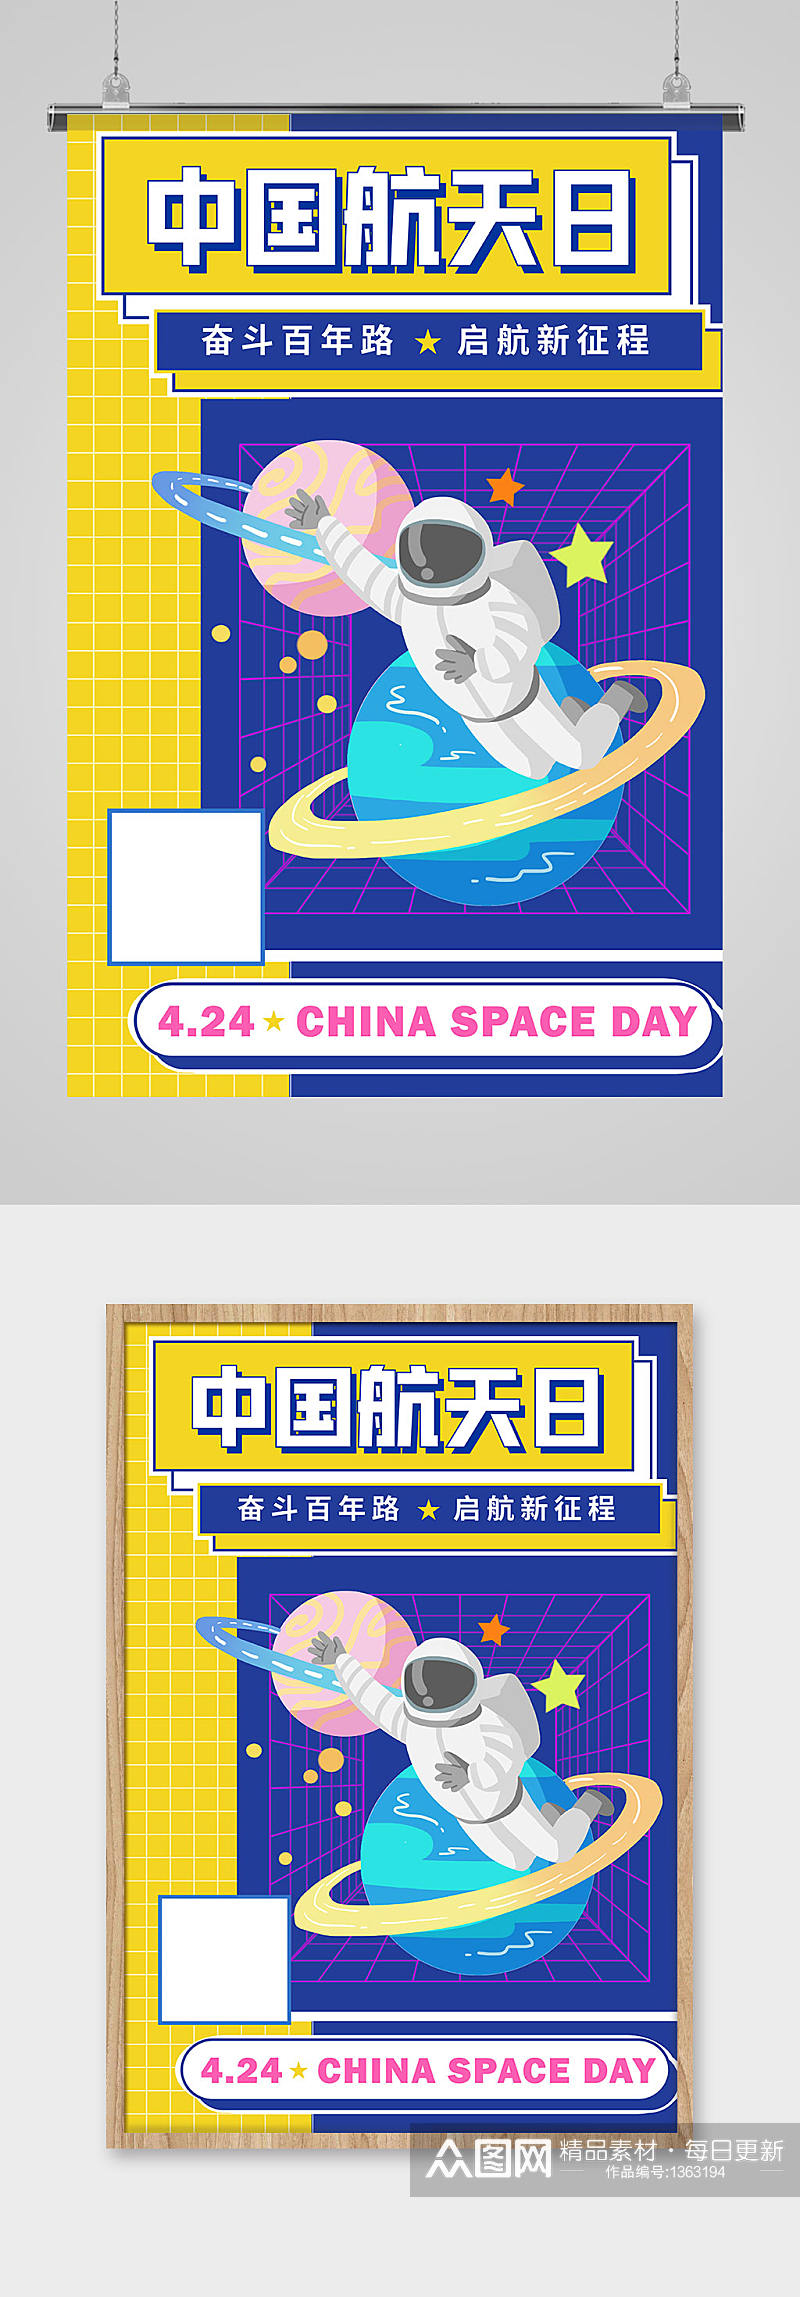 黄蓝撞色创意中国航天日宣传海报素材